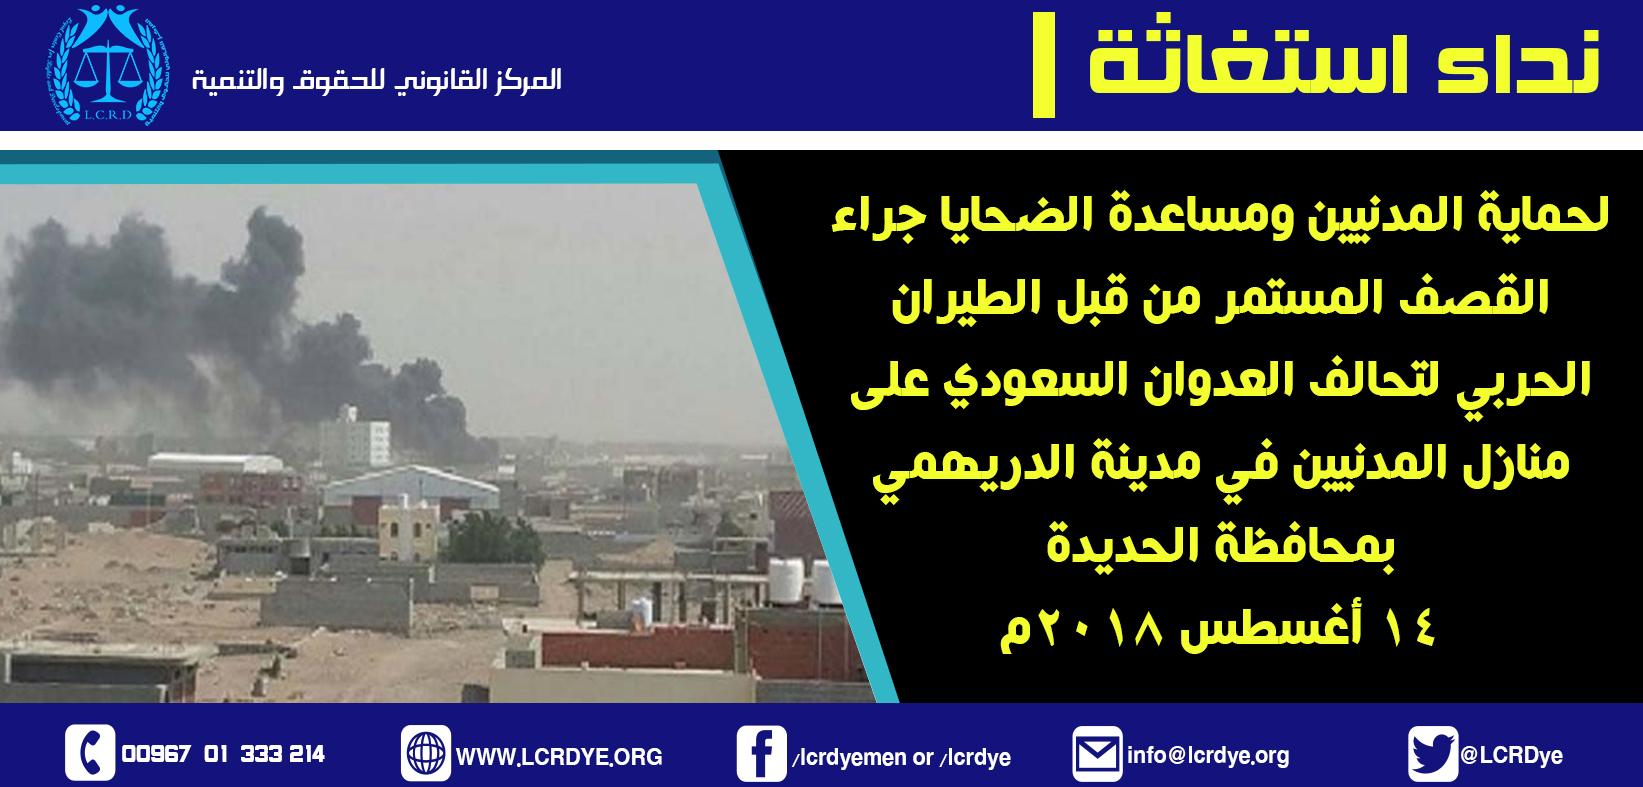 نداء استغاثة استهداف المدنيين في مدينة الدريهمي 14-8